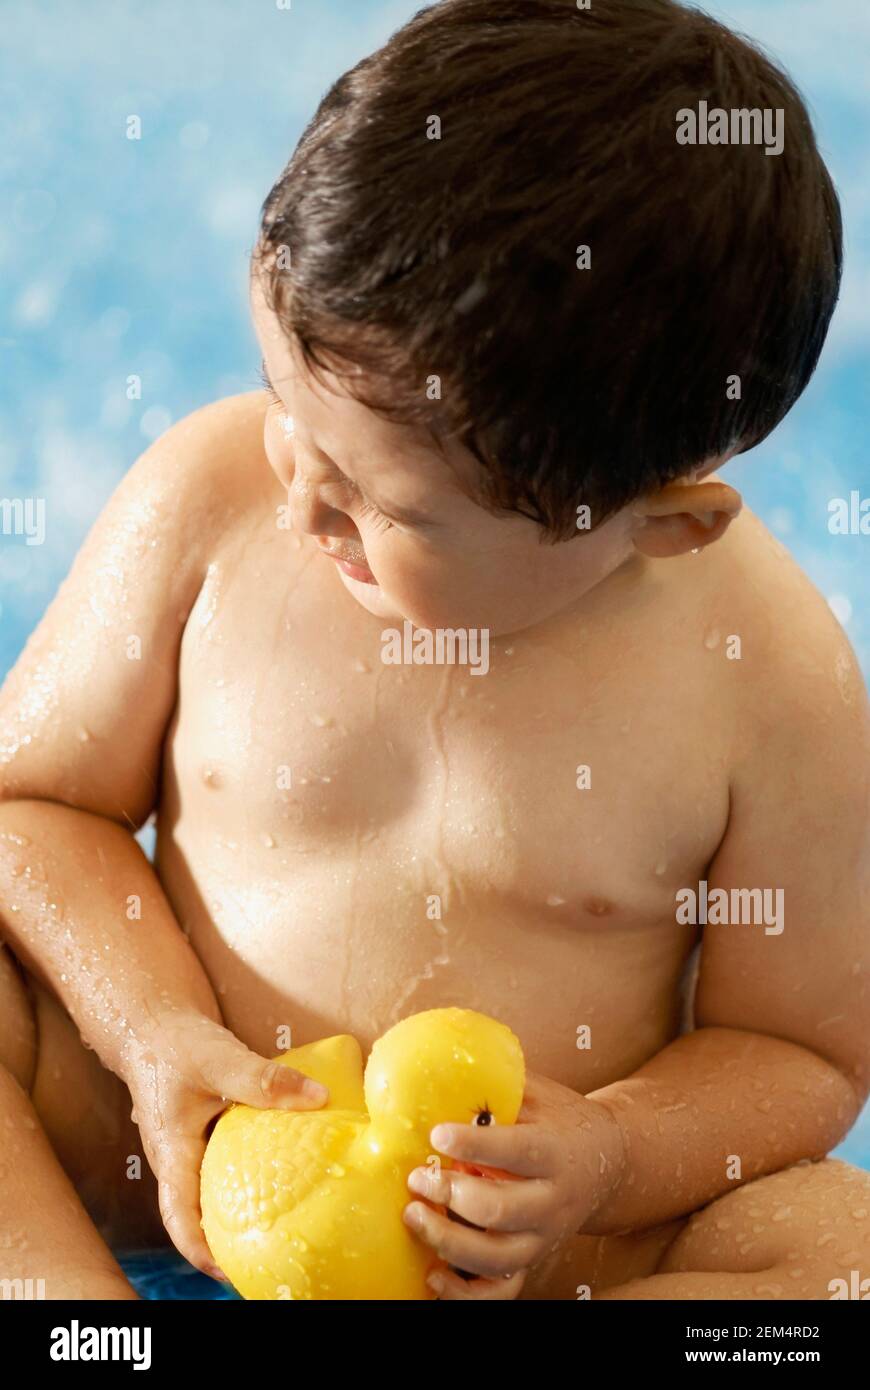 Gros plan d'un bébé garçon jouant avec un canard en caoutchouc dans une piscine Banque D'Images